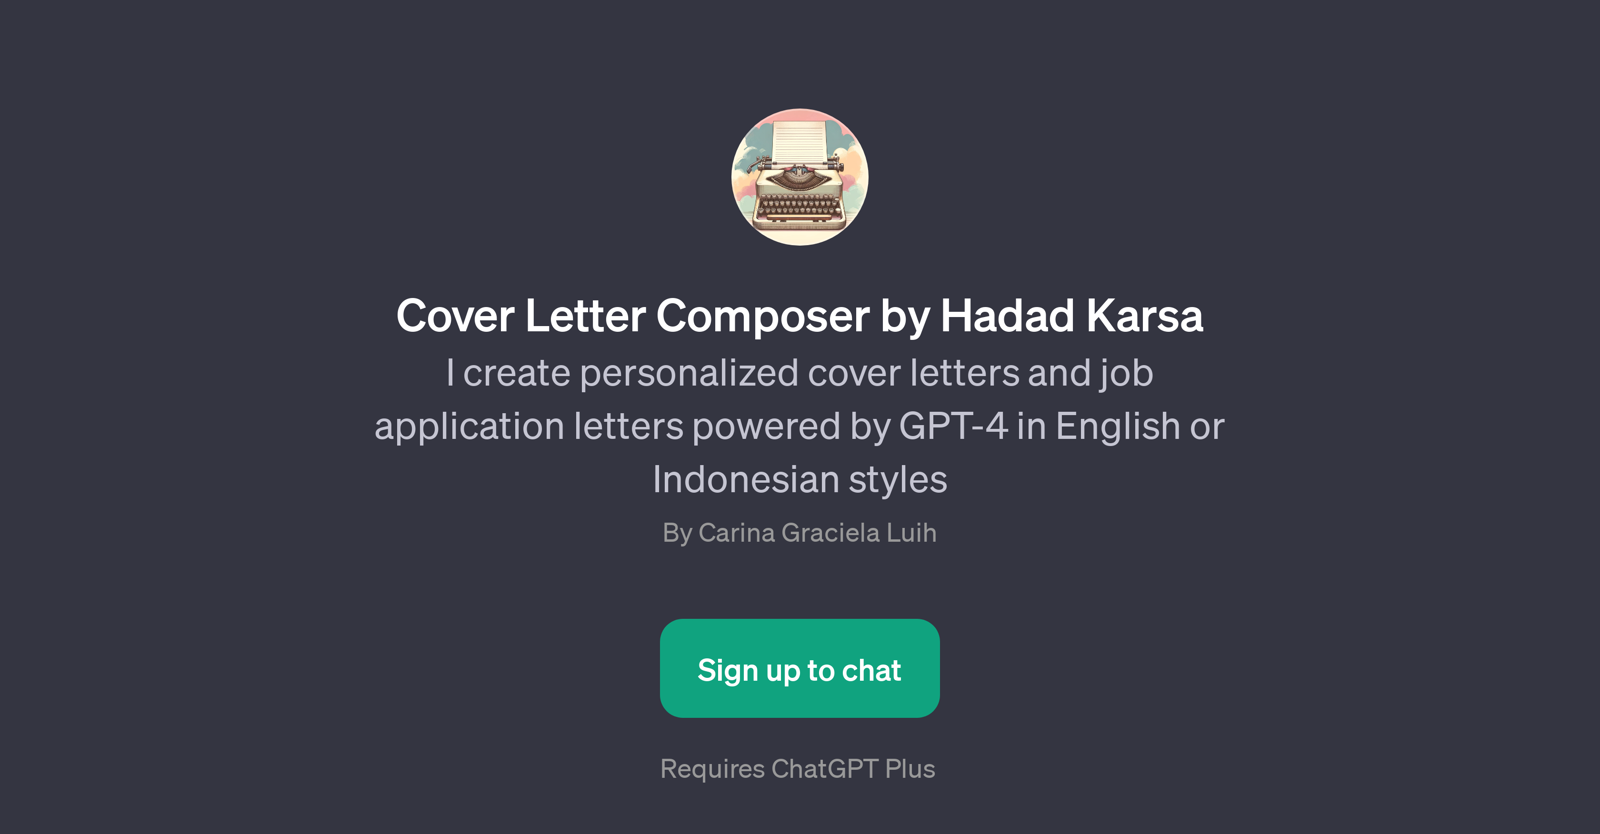 Cover Letter Composer by Hadad Karsa website